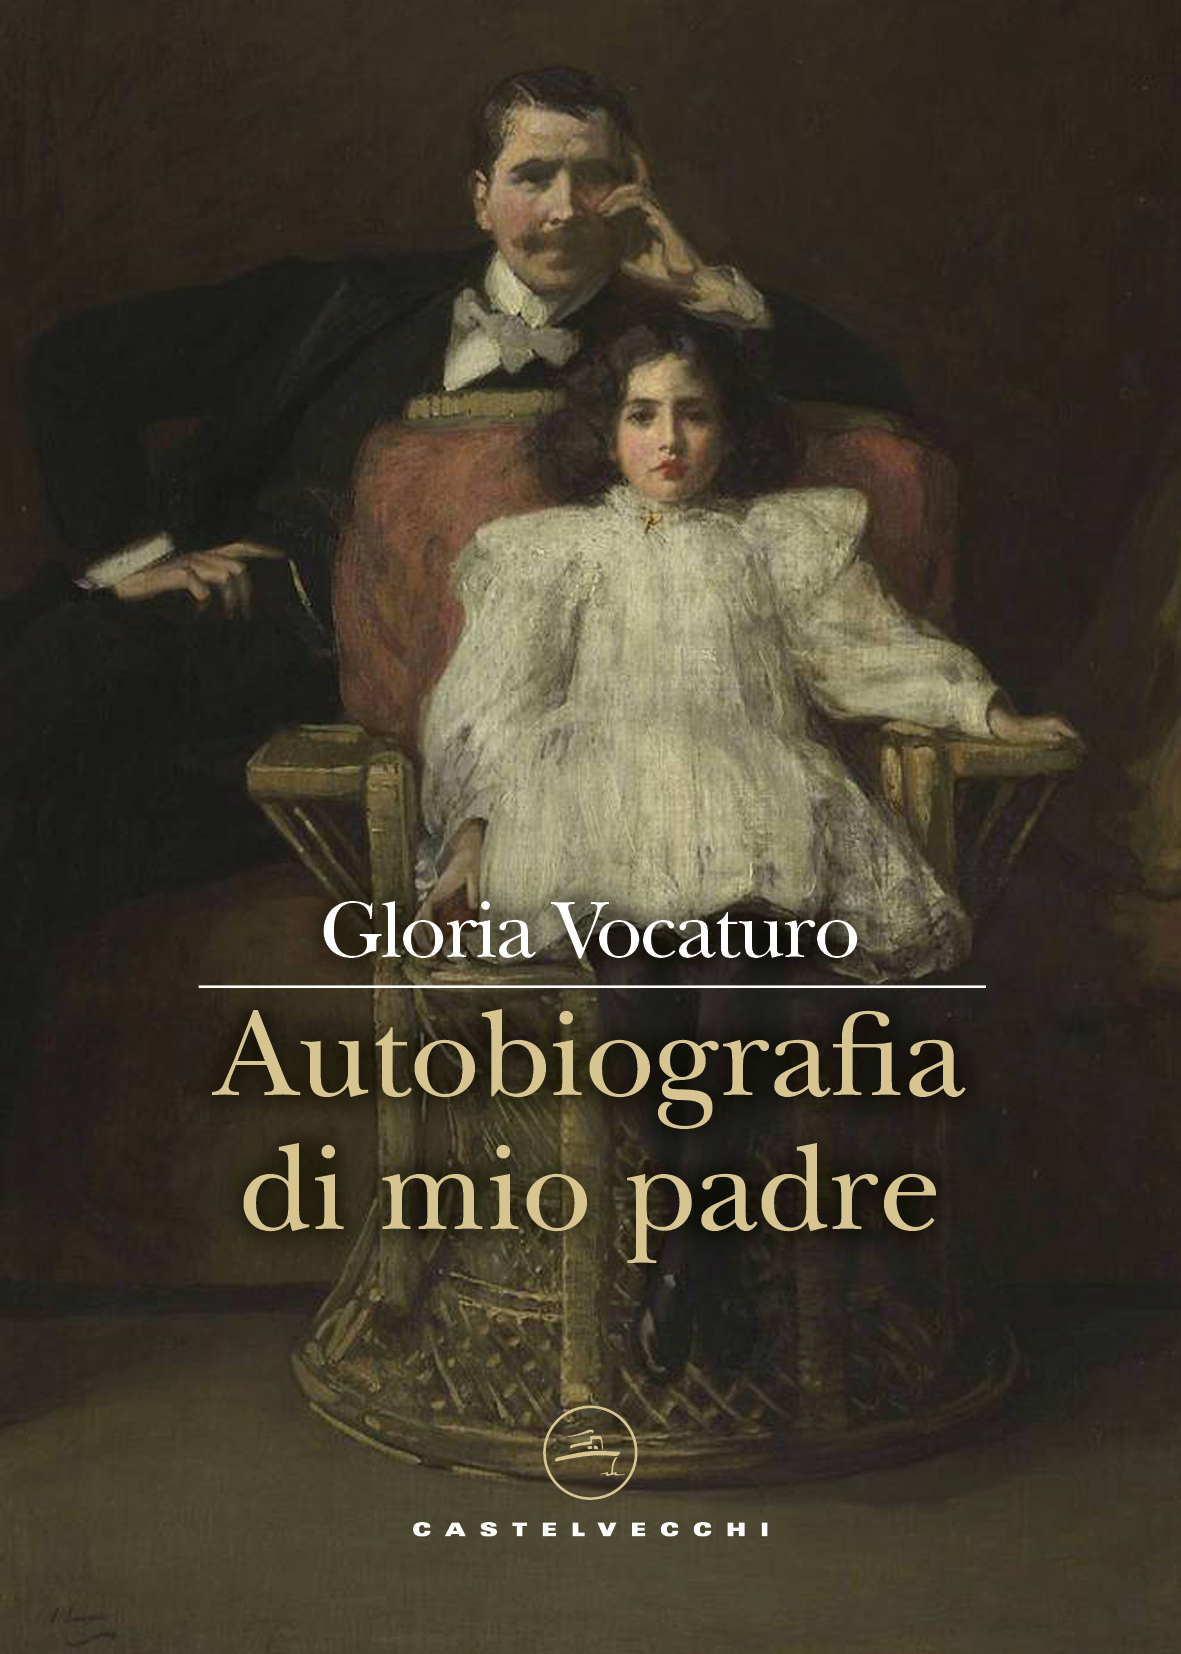 Gloria Vocaturo presenta il romanzo “Autobiografia di mio padre”